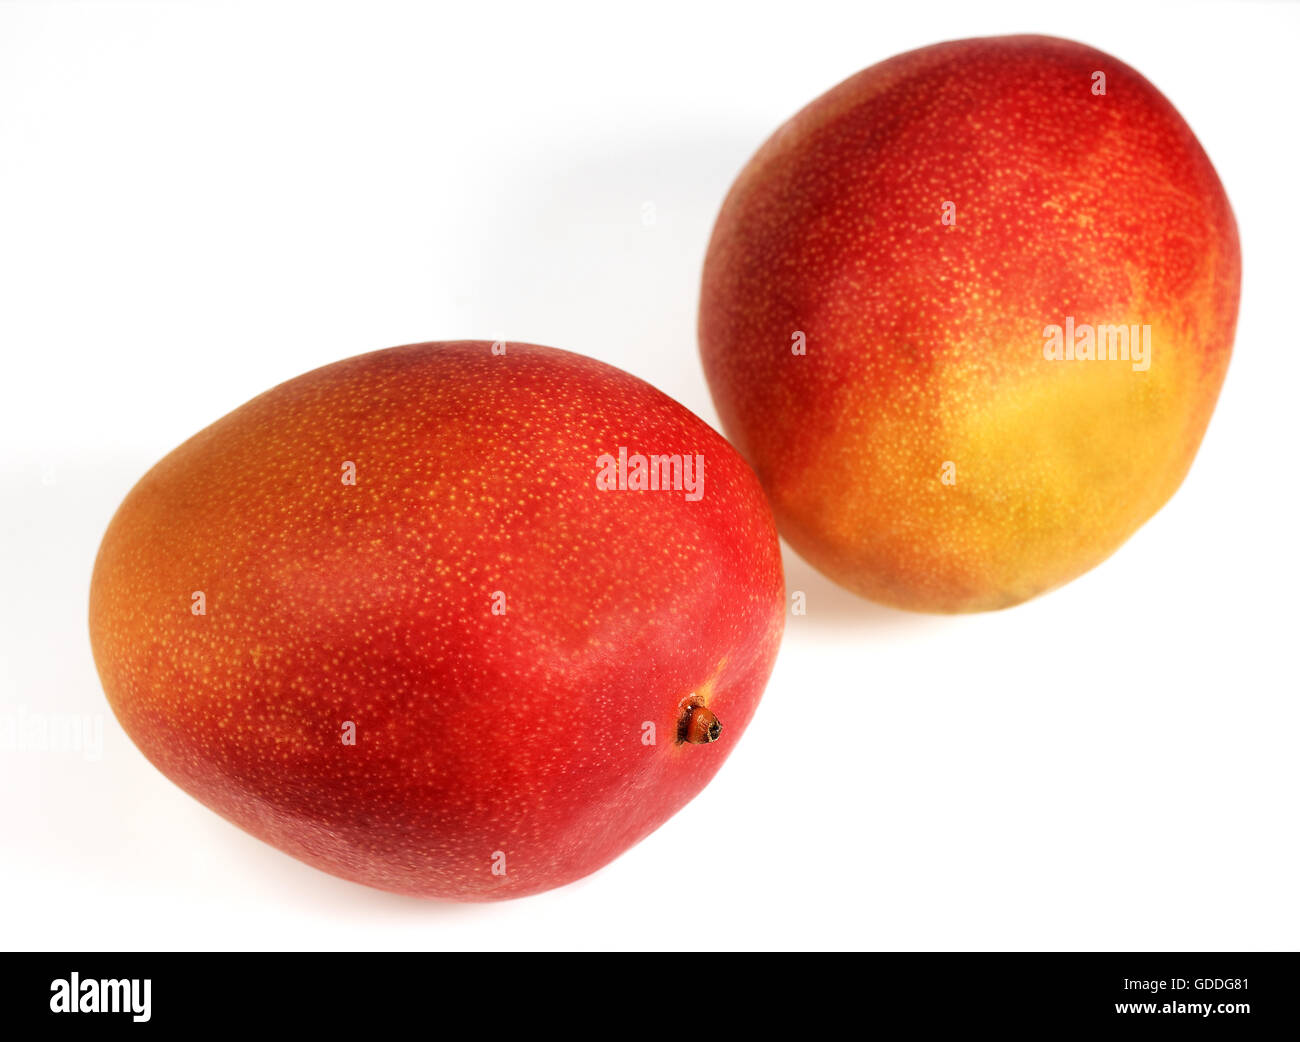 MANGO mangifera indica AGAINST WHITE BACKGROUND Stock Photo